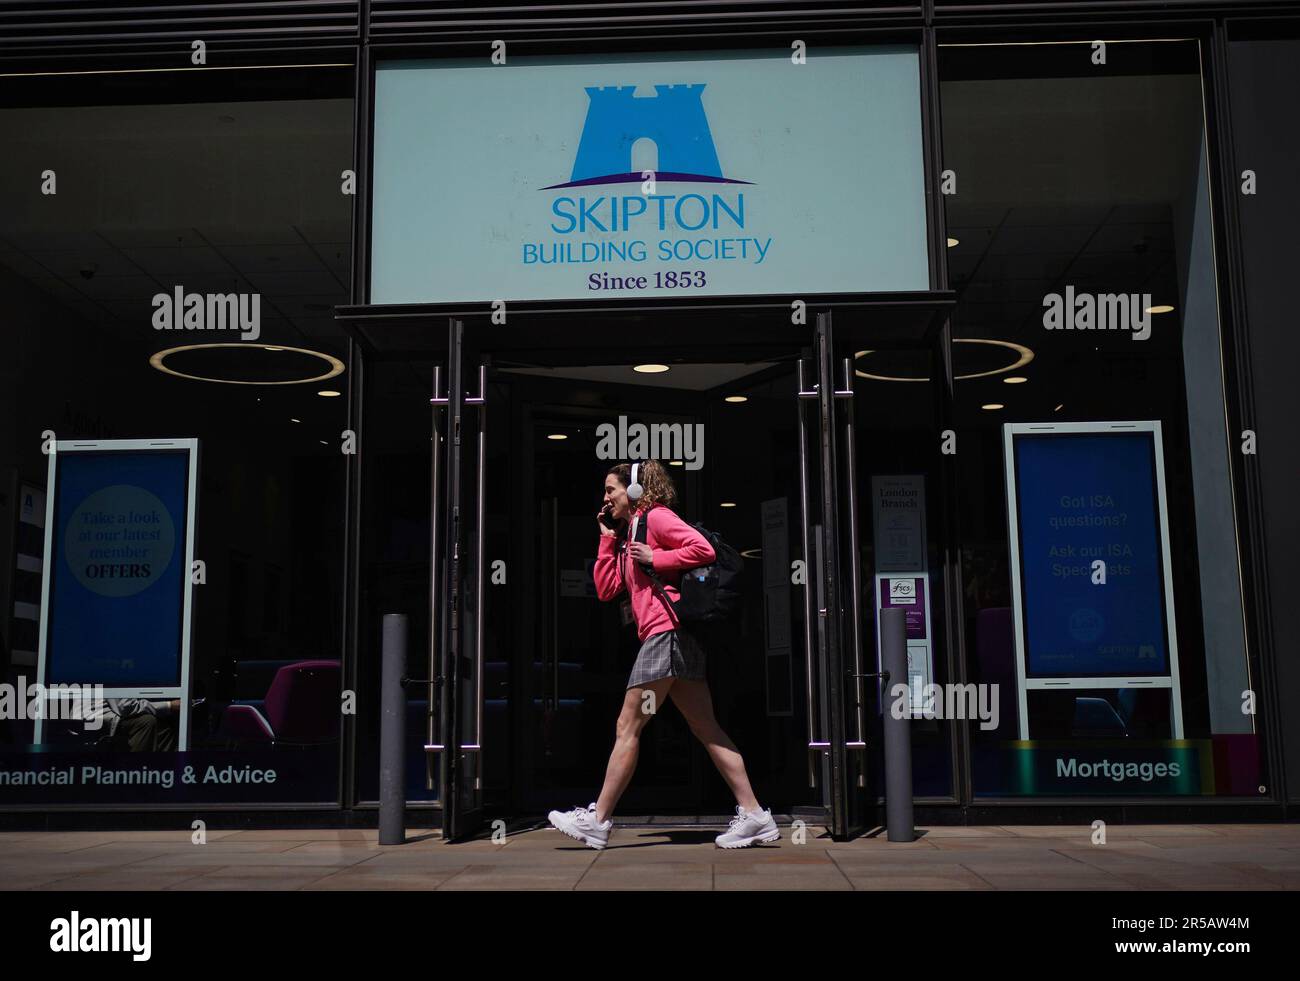 Una visione generale di una filiale della Skipton Building Society a Holborn, Londra, che offre un conto risparmiatore regolare che paga un tasso di interesse del 7,5%, esclusivamente per i membri Skipton esistenti. Data immagine: Venerdì 2 giugno 2023. Foto Stock